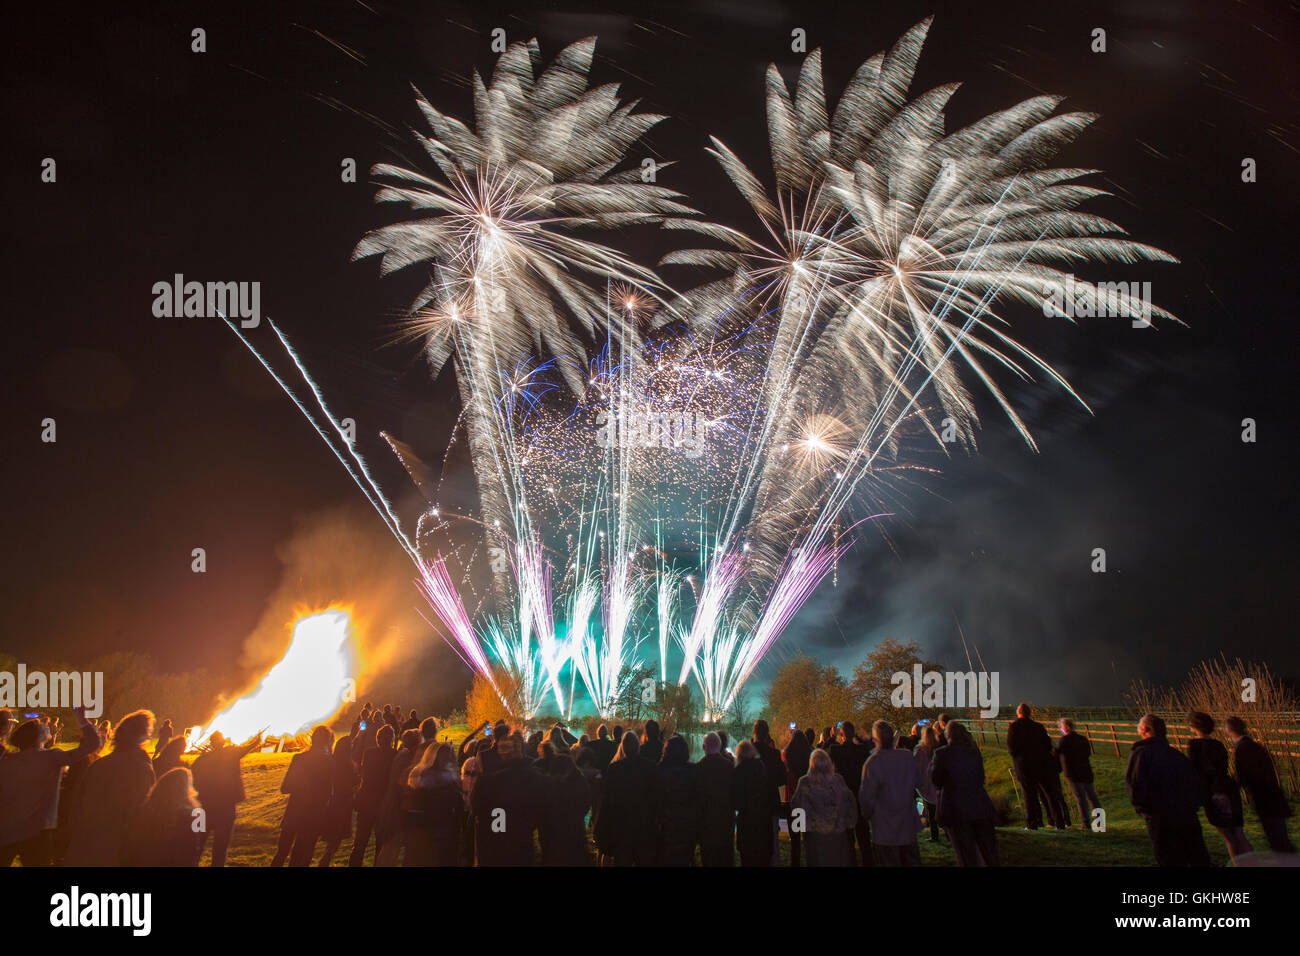 Spettacolo di fuochi d'artificio spettacolare e colorato ambientato contro un cielo scuro d'autunno nel Lancashire, che celebra la notte di Guy Fawkes Foto Stock